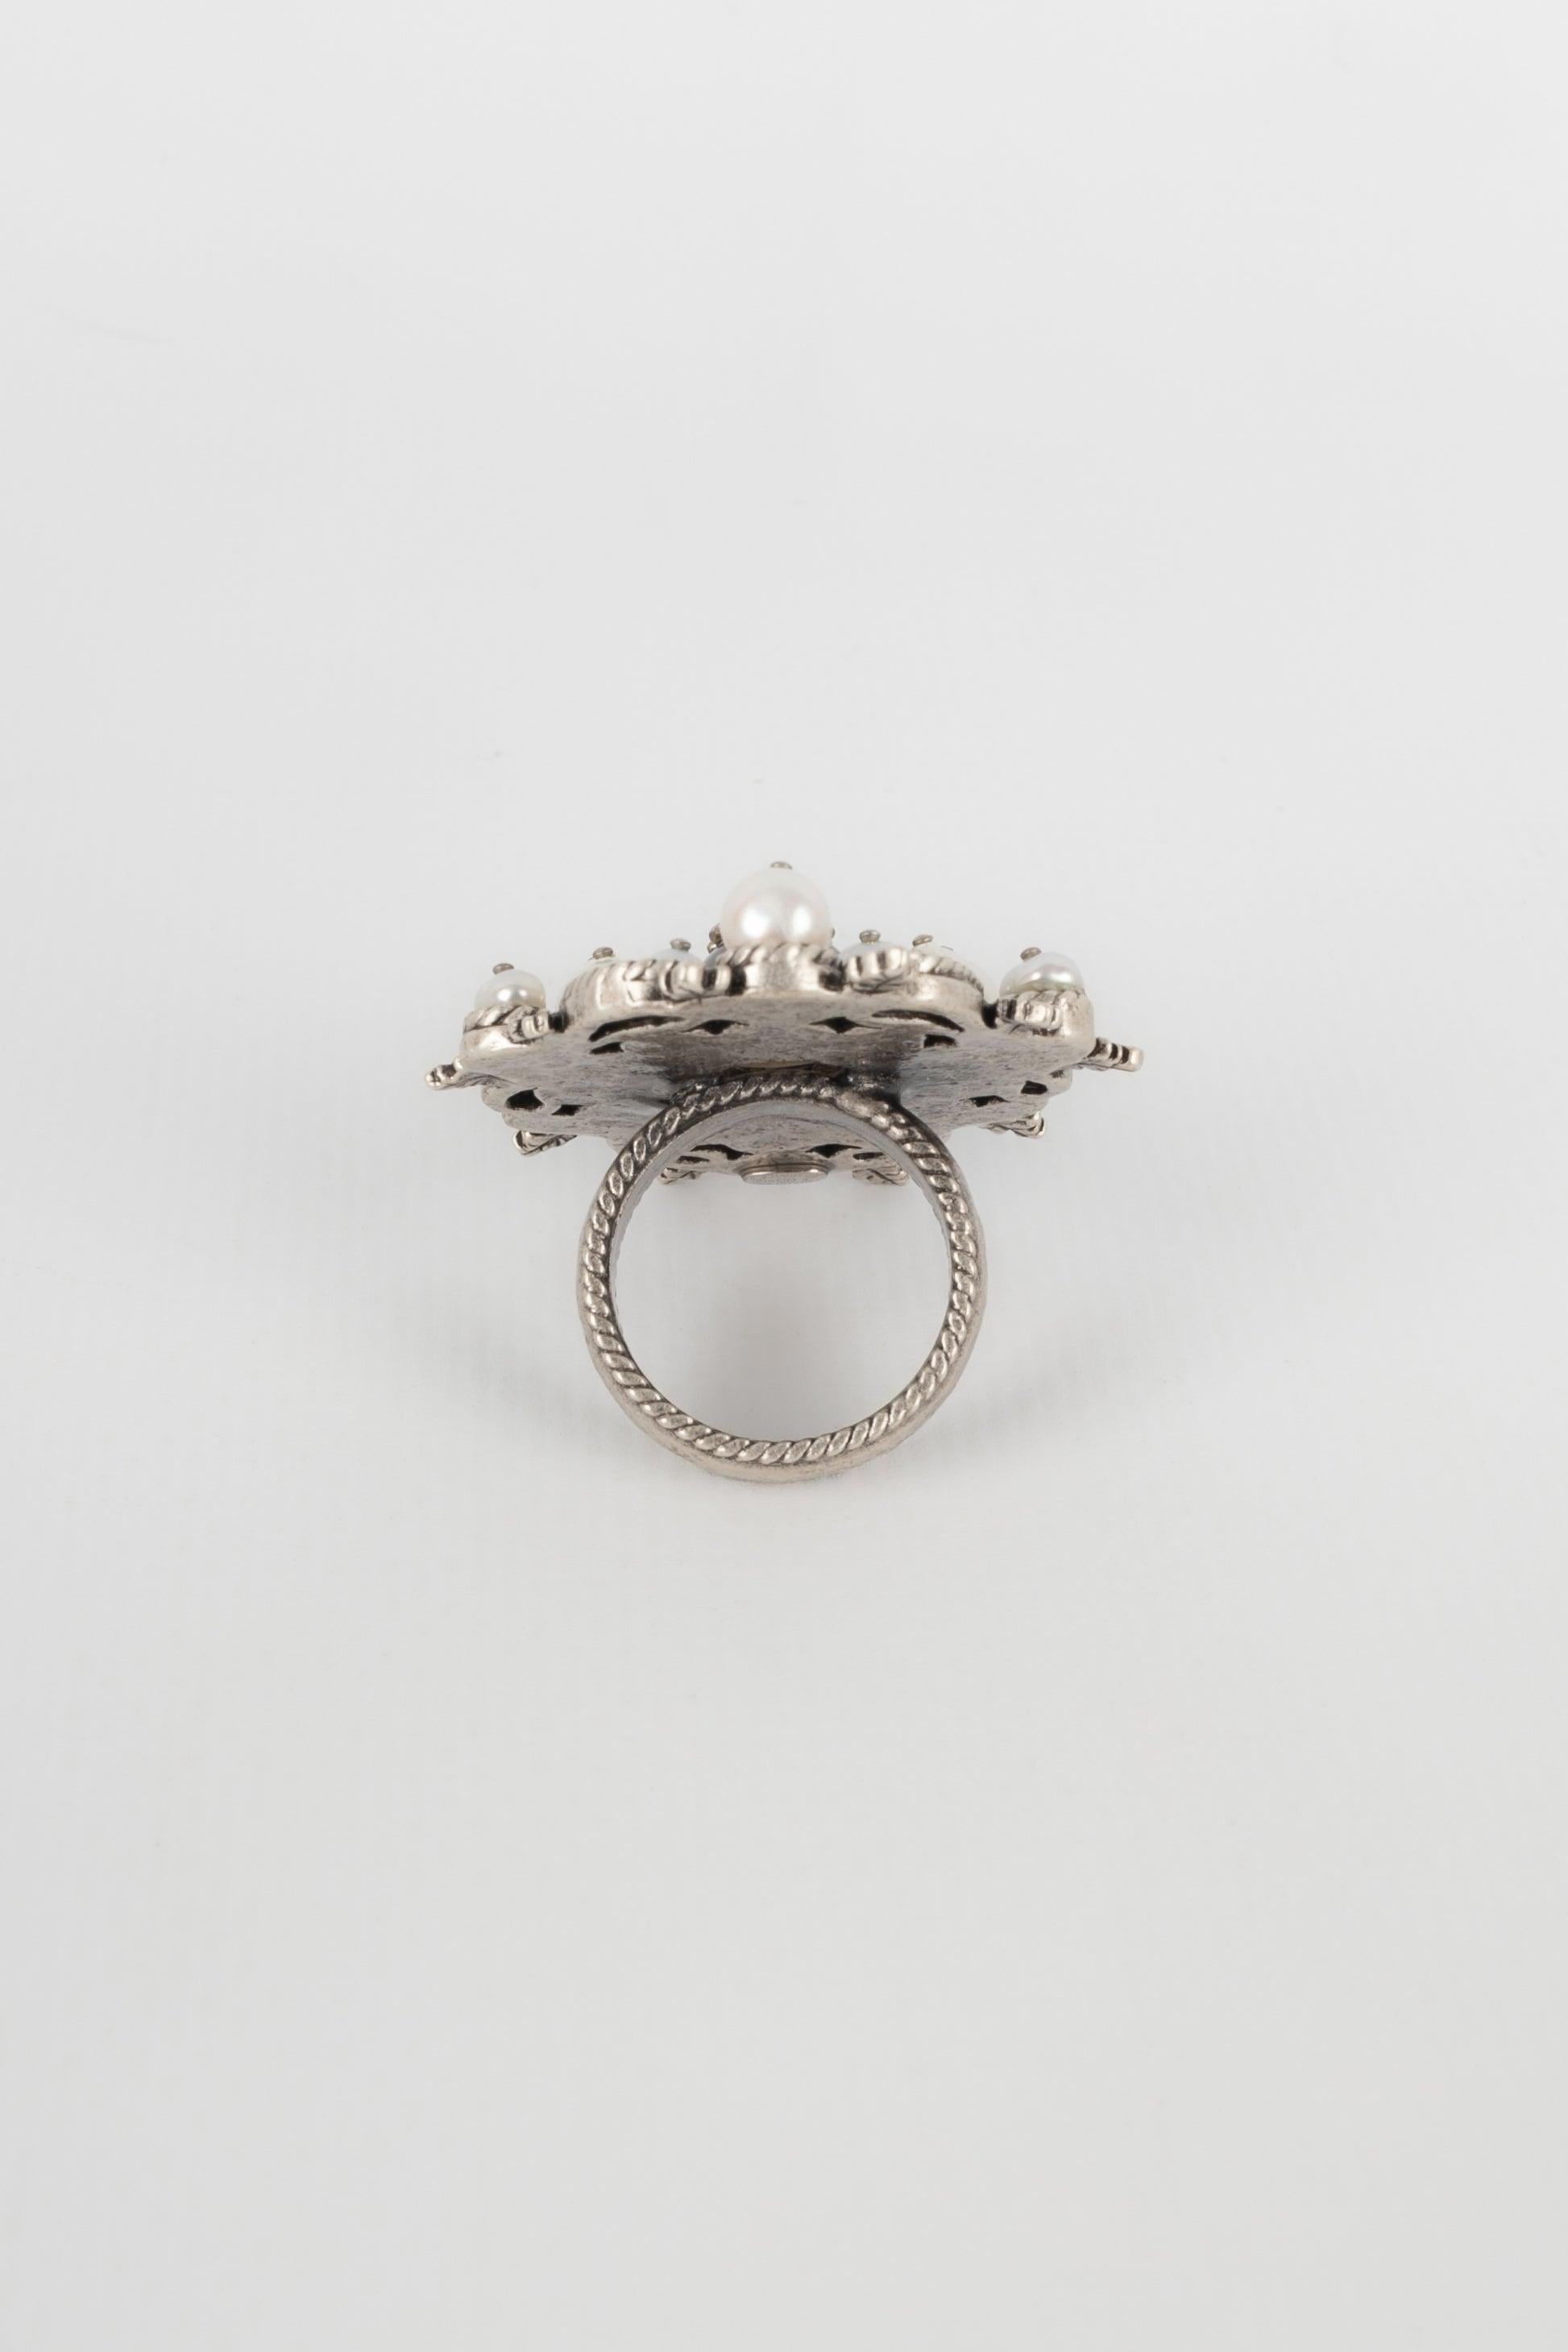 Chanel, bague CC en métal argenté avec perles de costume, 2015 1